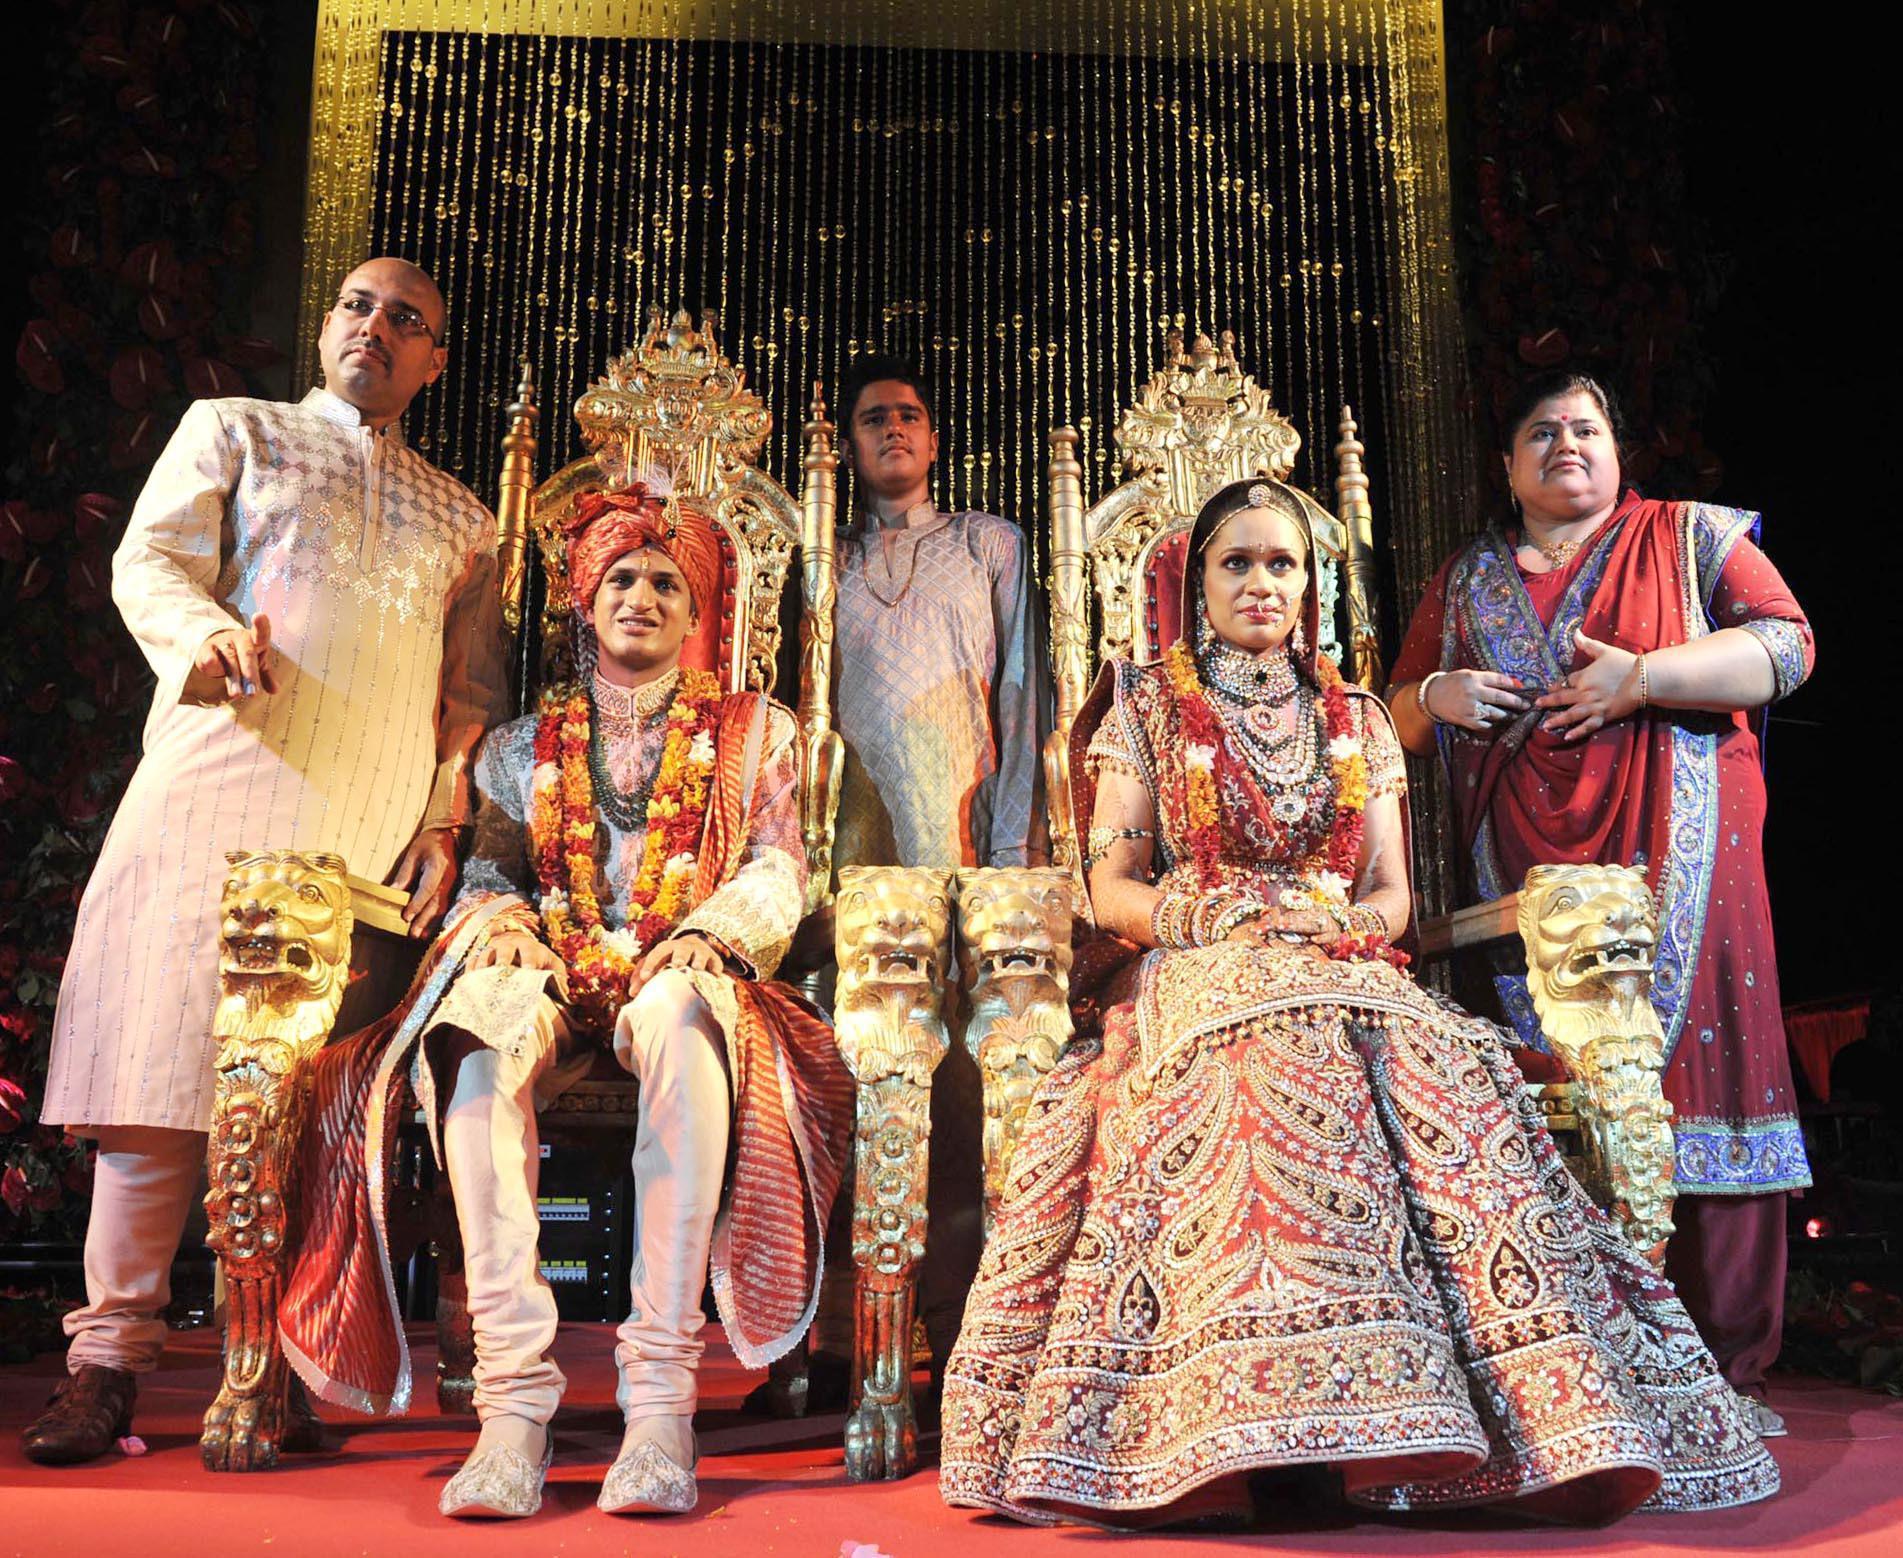 Antalya, milyon dolarlık Hint düğünlerinin yeni adresi